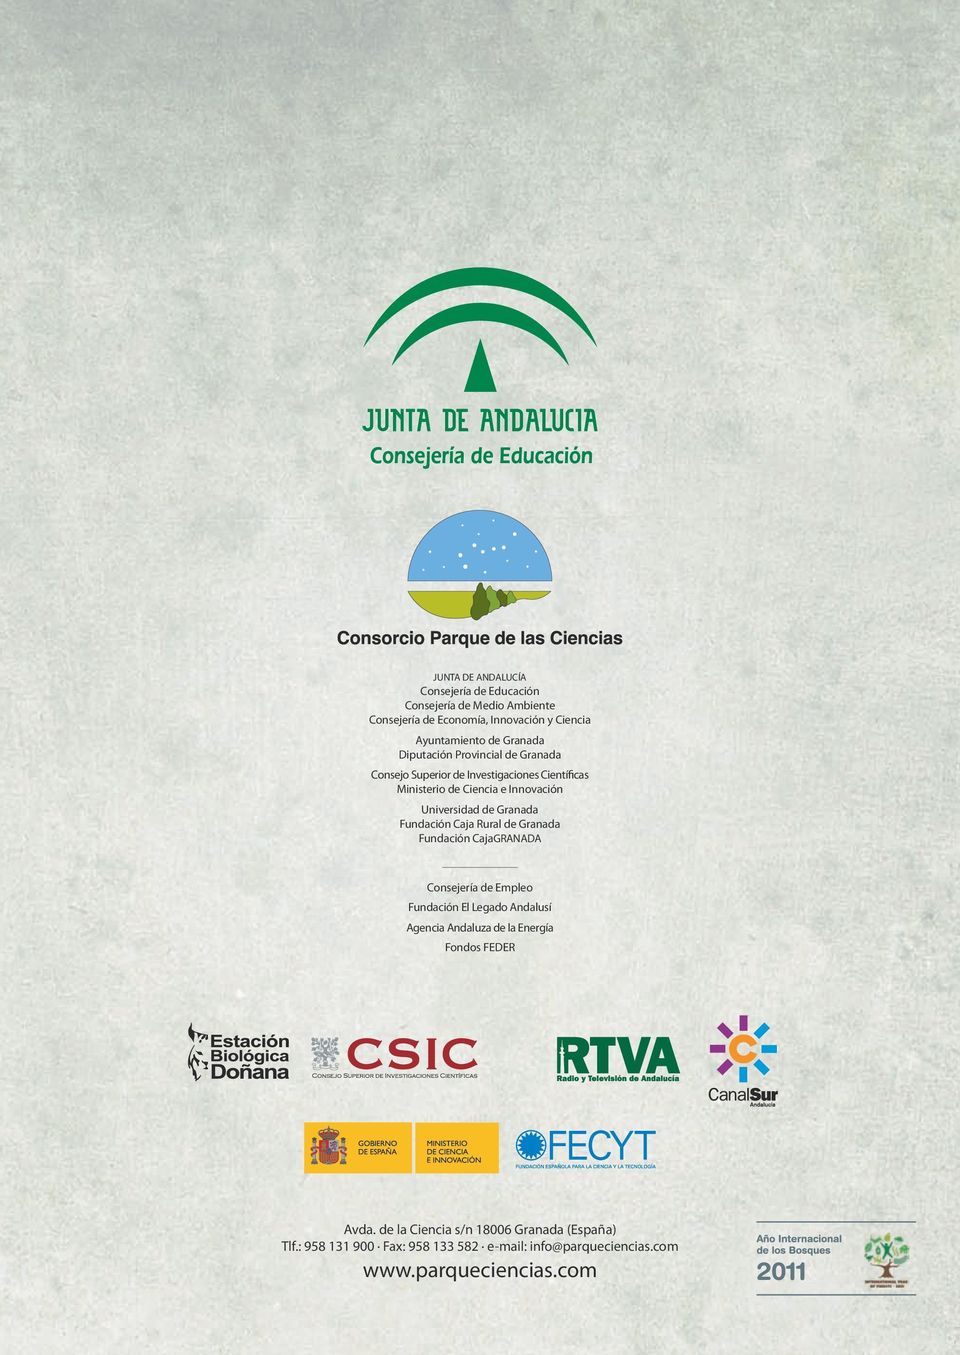 Fundación Caja Rural de Granada Fundación CajaGRANADA Consejería de Empleo Fundación El Legado Andalusí Agencia Andaluza de la Energía